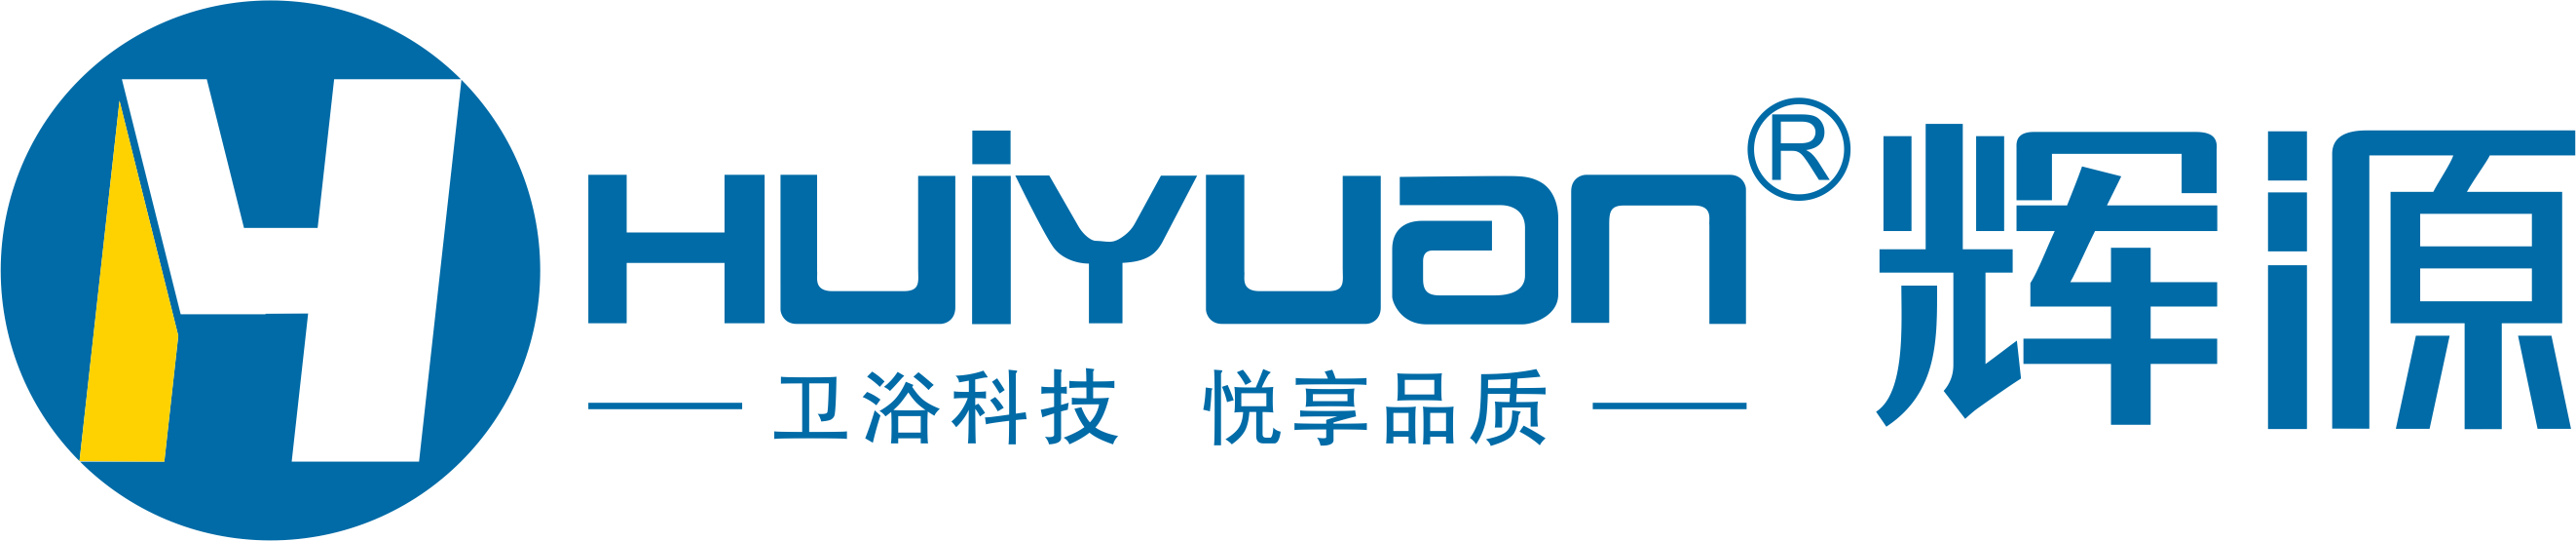 Guangdong huiyuan technology Co.,Ltd